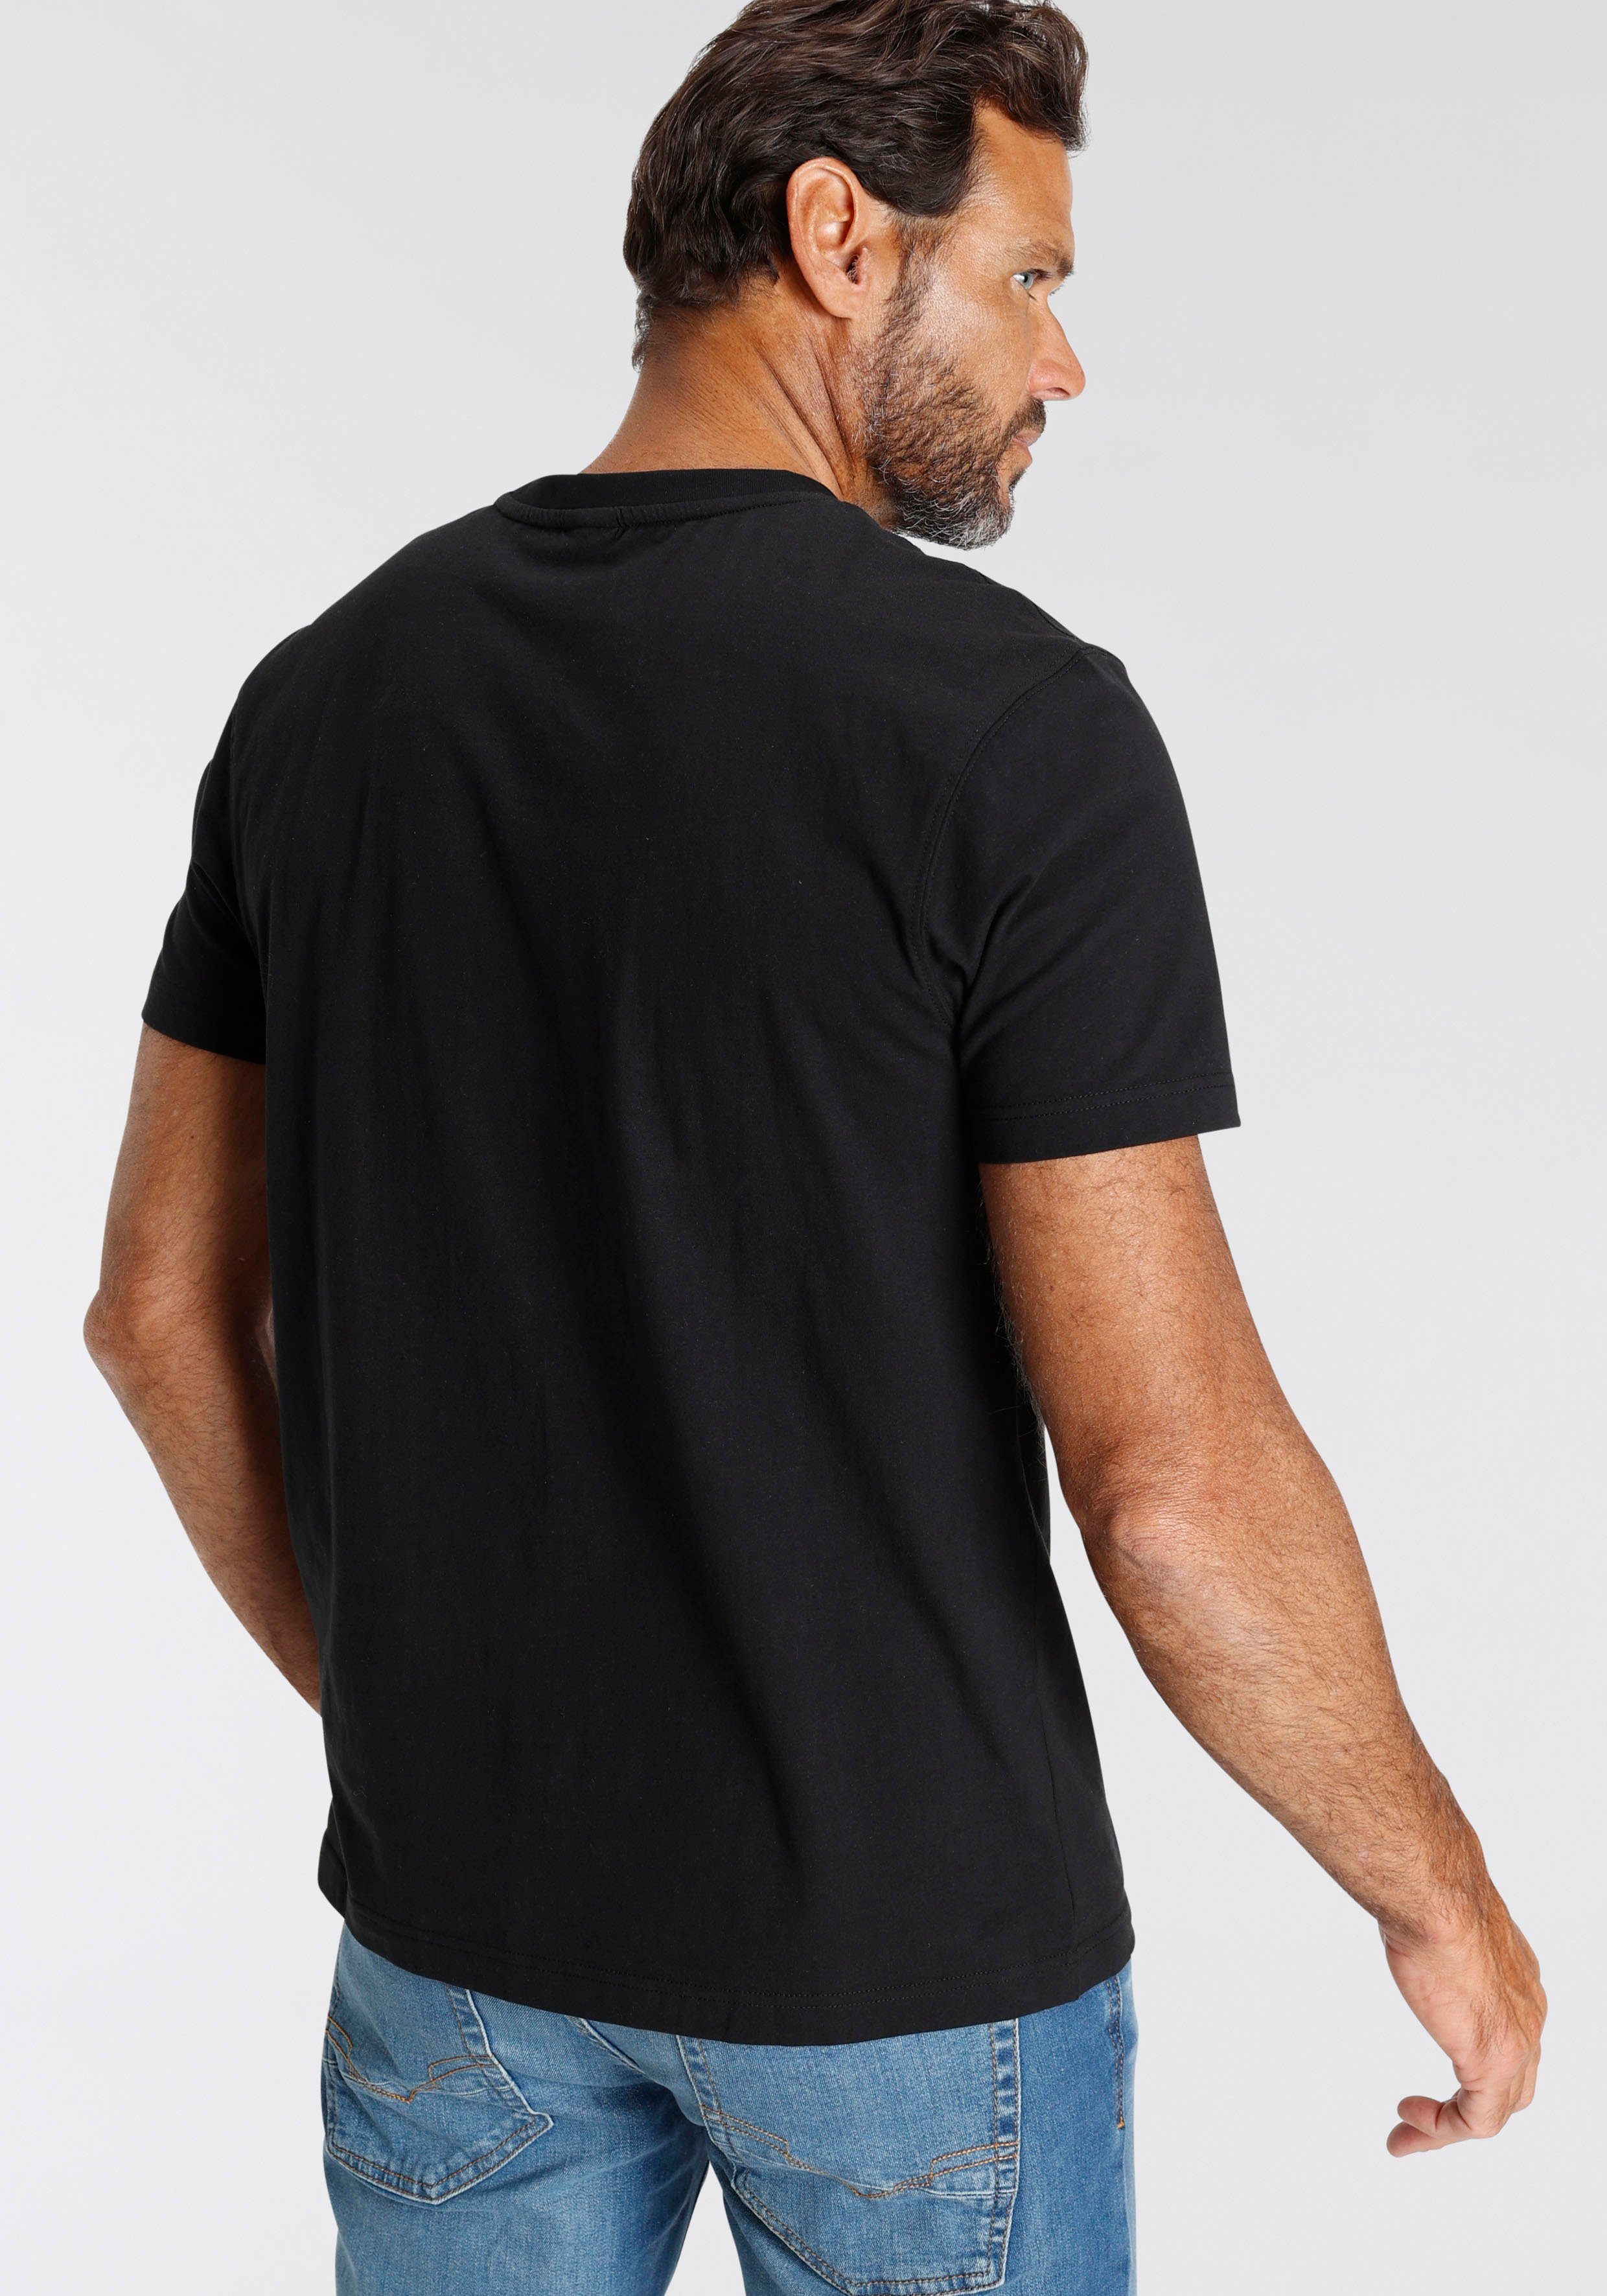 H.I.S T-Shirt mit schwarz Logo-Print vorne